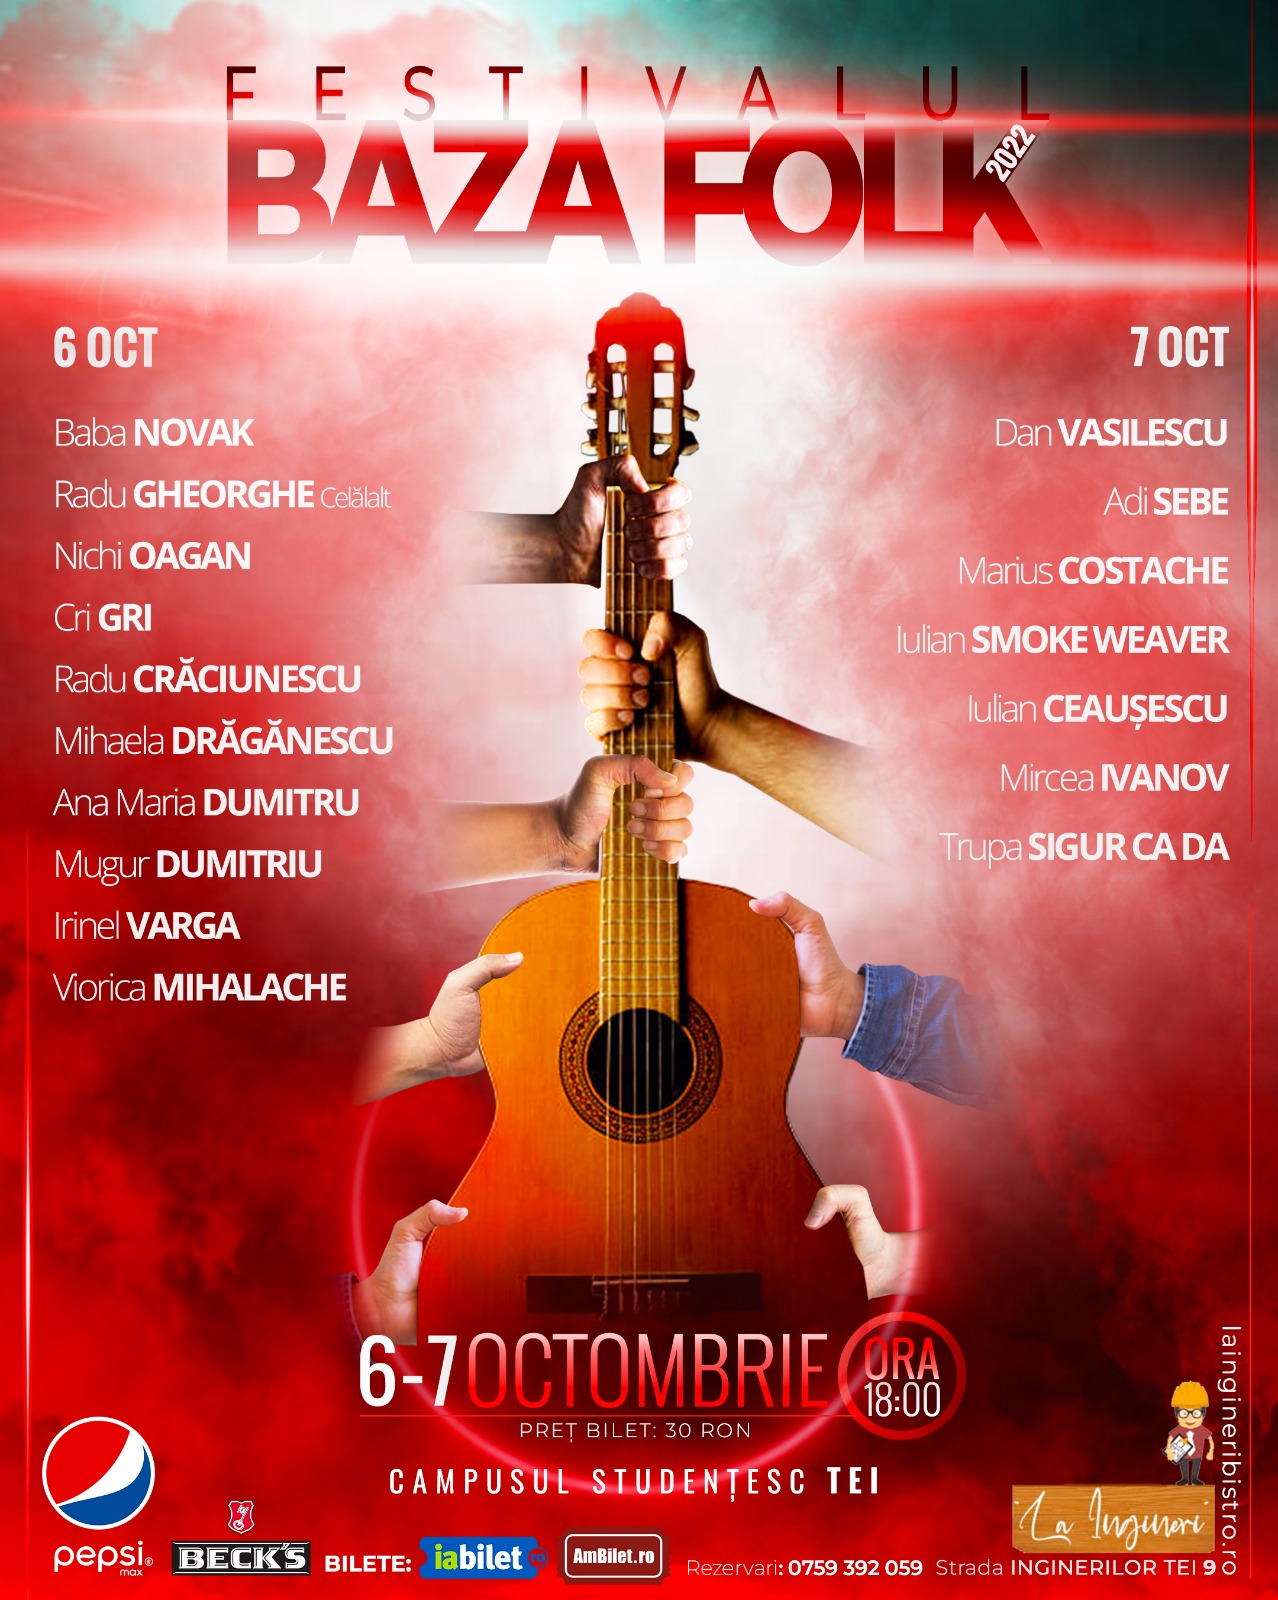 Festivalul BAZA FOLK. Ediția NR.1. Campusul Studențesc Tei. La Ingineri